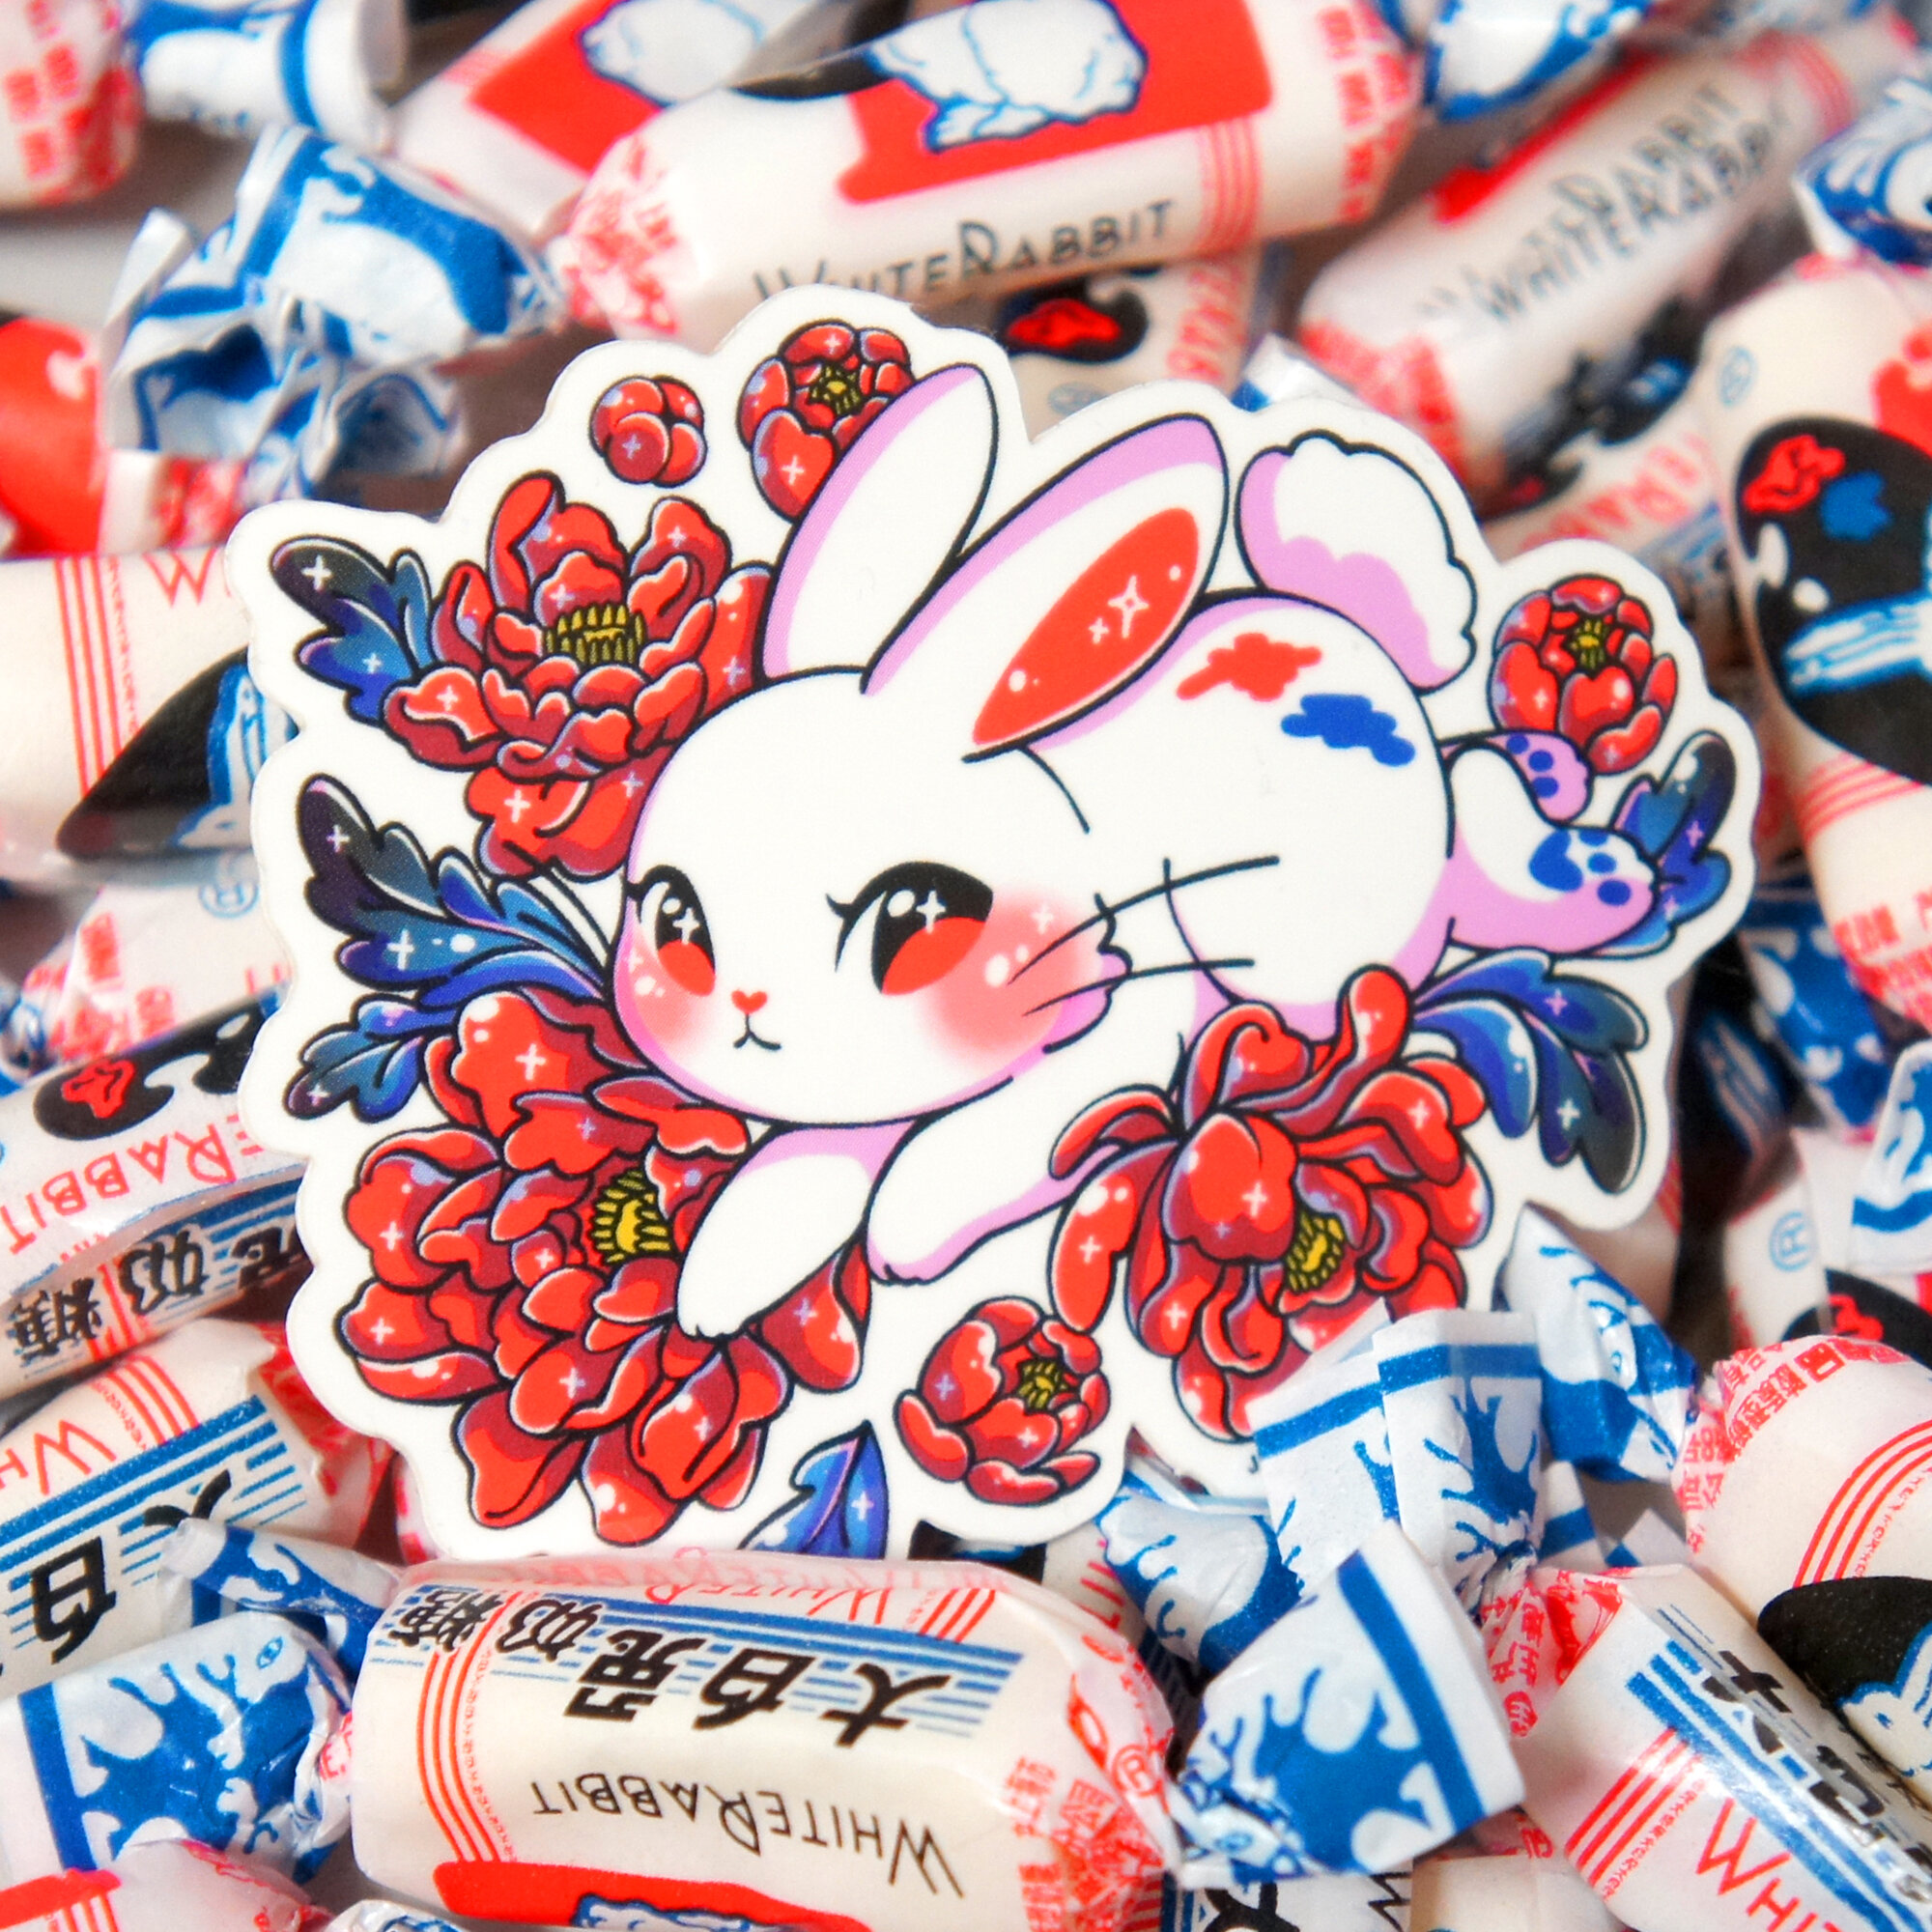 white rabbit candy sticker.jpg